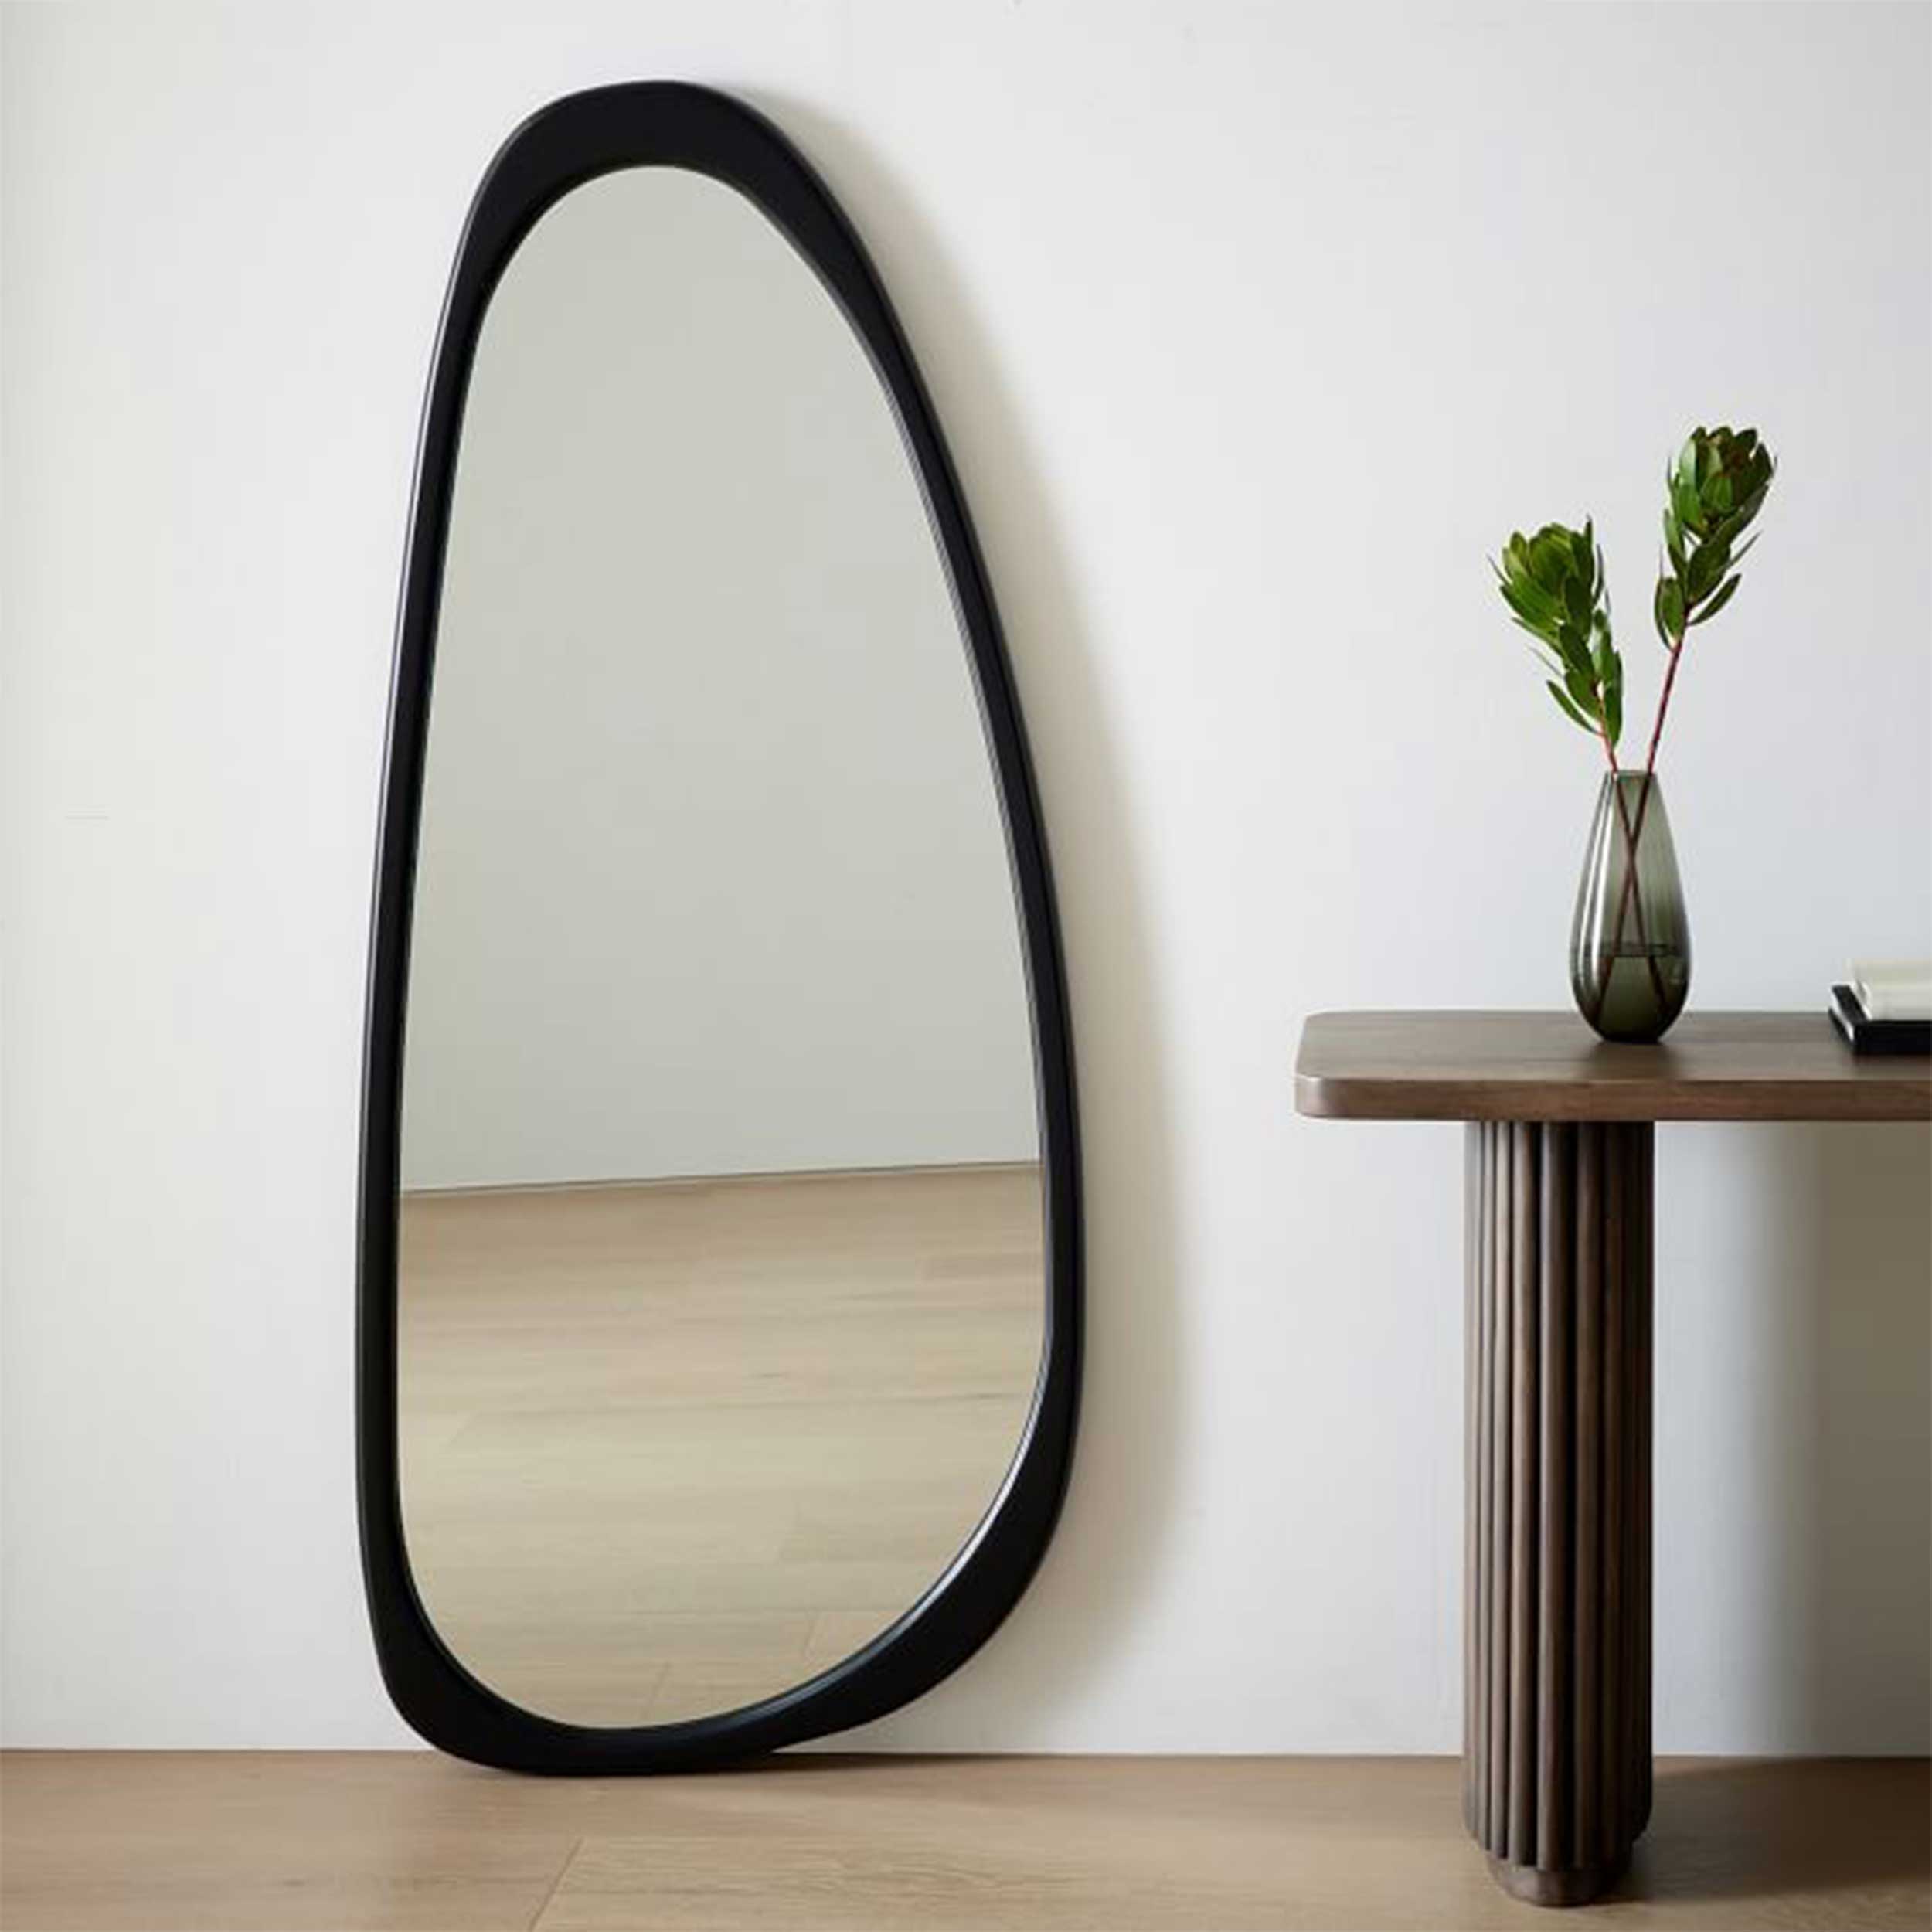 نکته خرید - قیمت روز آینه مدل قدی چوبی طرح اطلس w-160 خرید